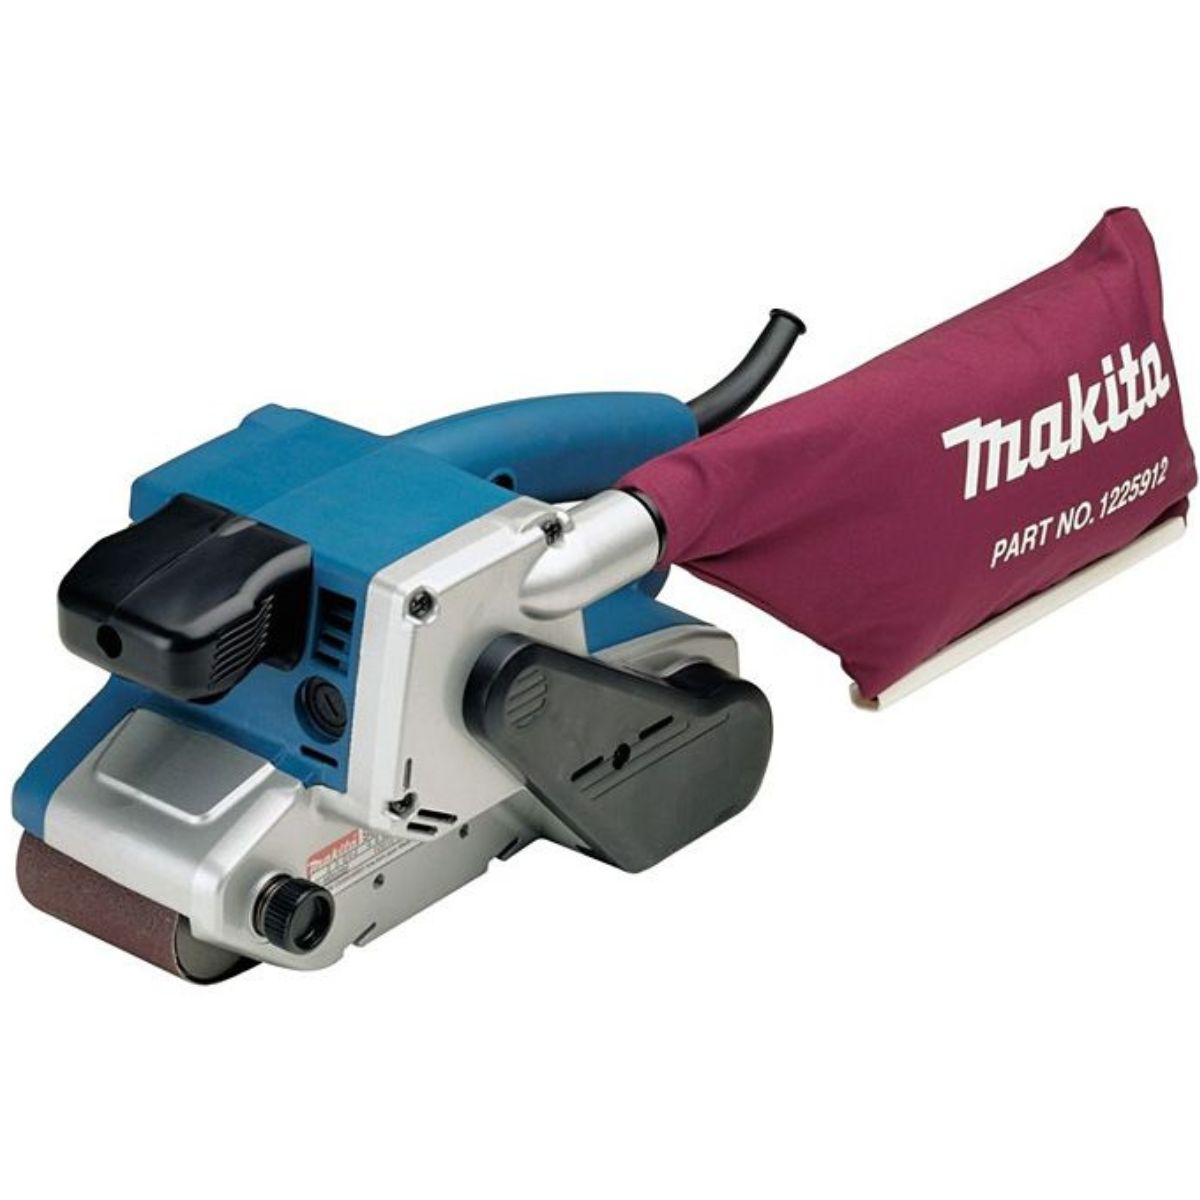 Makita 9903/1 76mm x 533mm Belt Sander 110V